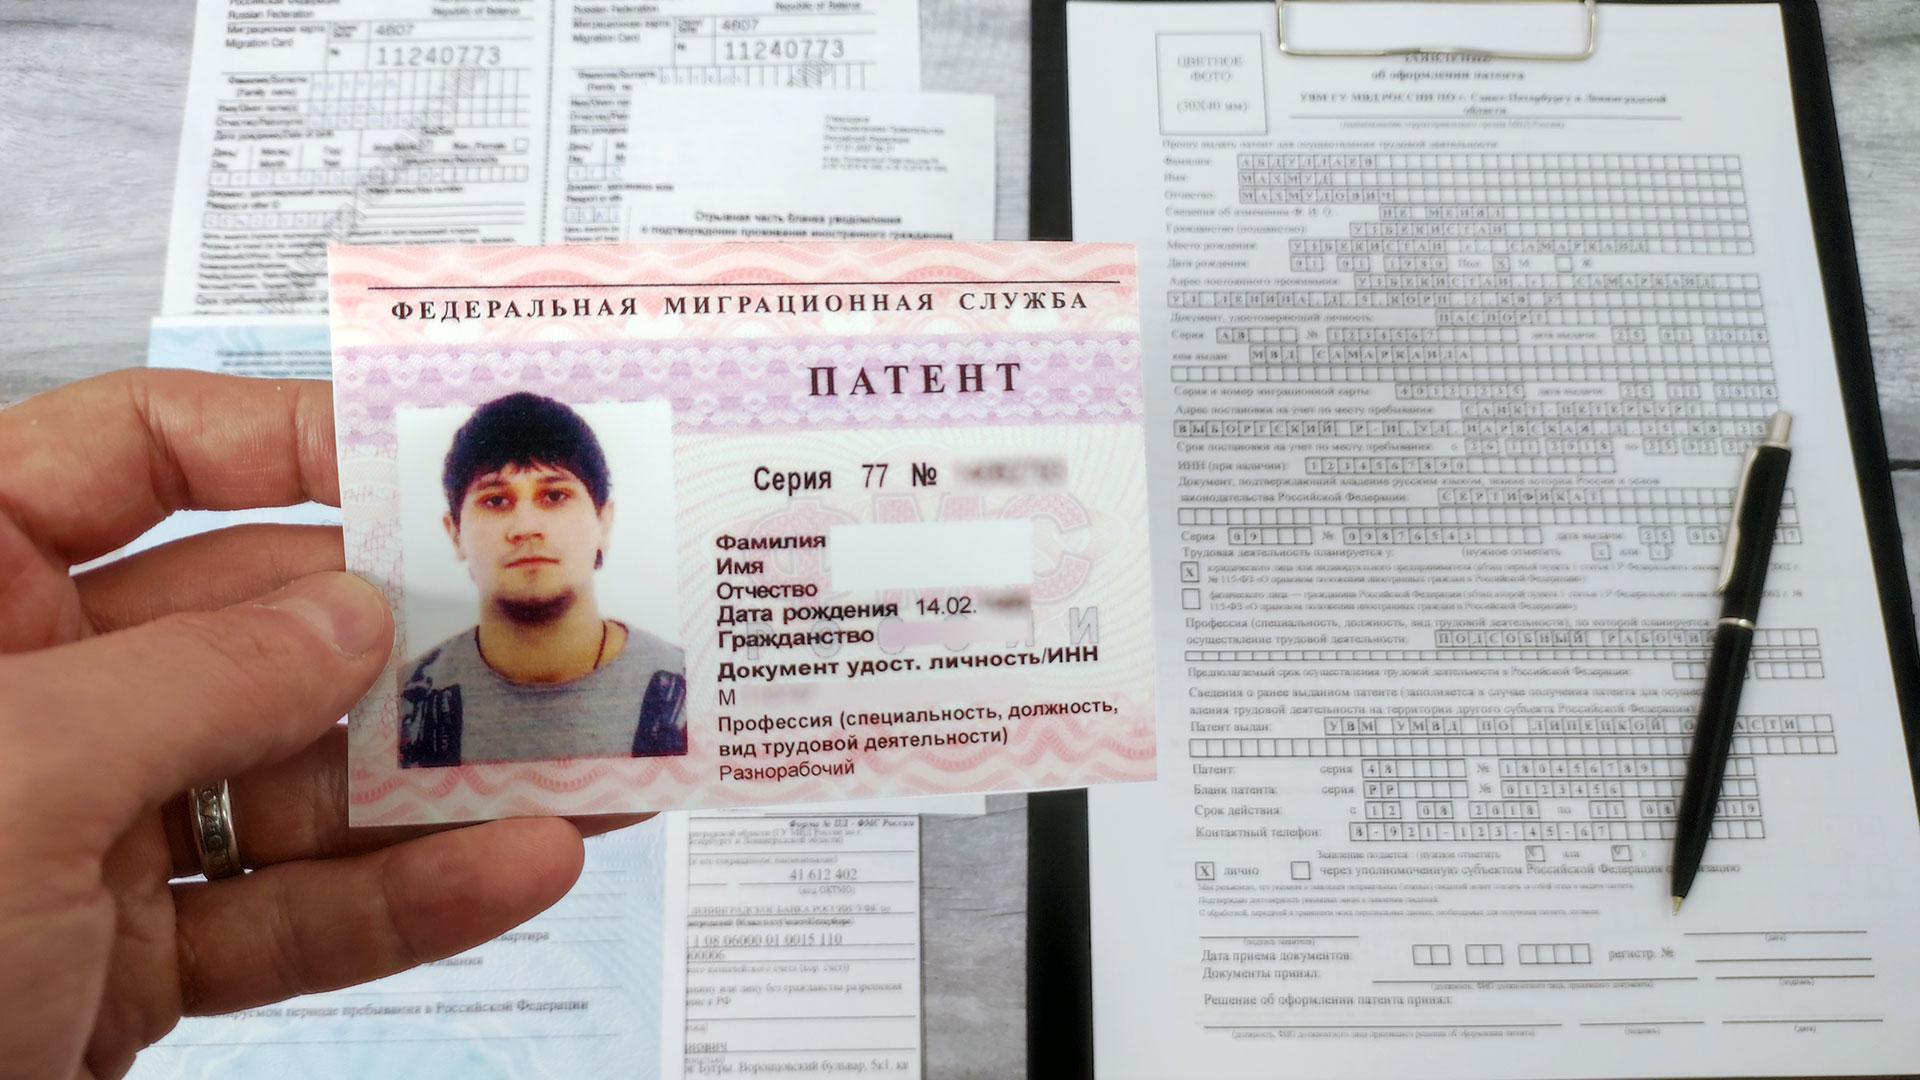 Патент выдается иностранному гражданину на срок. Патент для иностранных граждан. Патент на работу для иностранных граждан. Патент для иностранных граждан фото. Кредит иностранным гражданам в России с патентом.